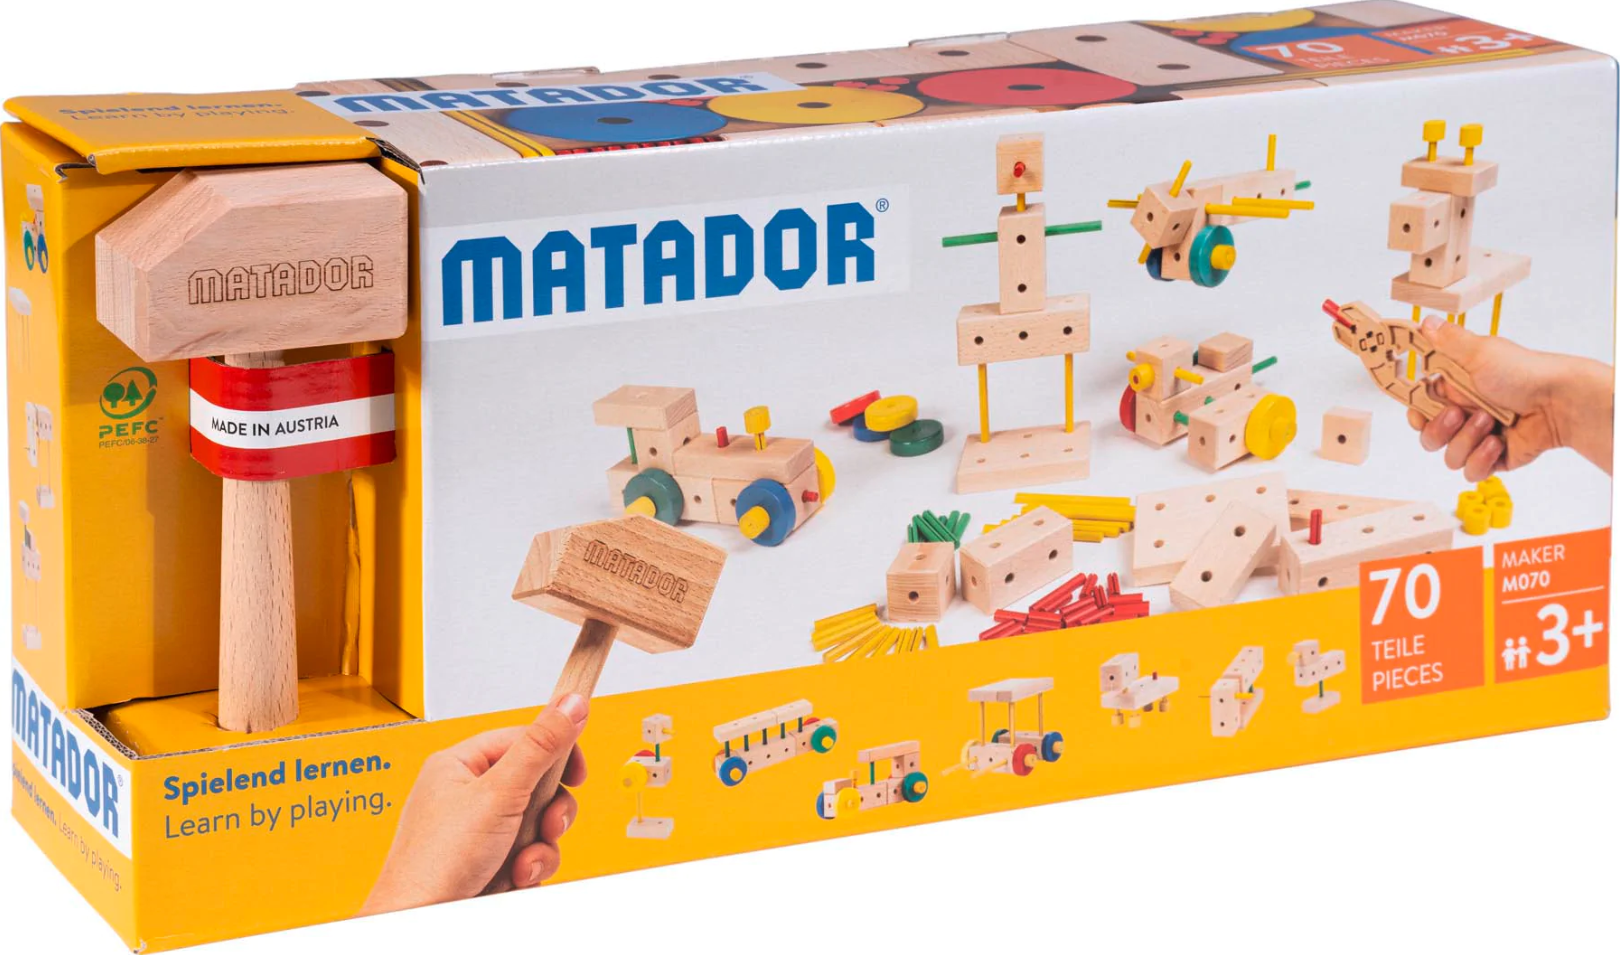 Matador Maker M070 - 70pcs Made in Austria